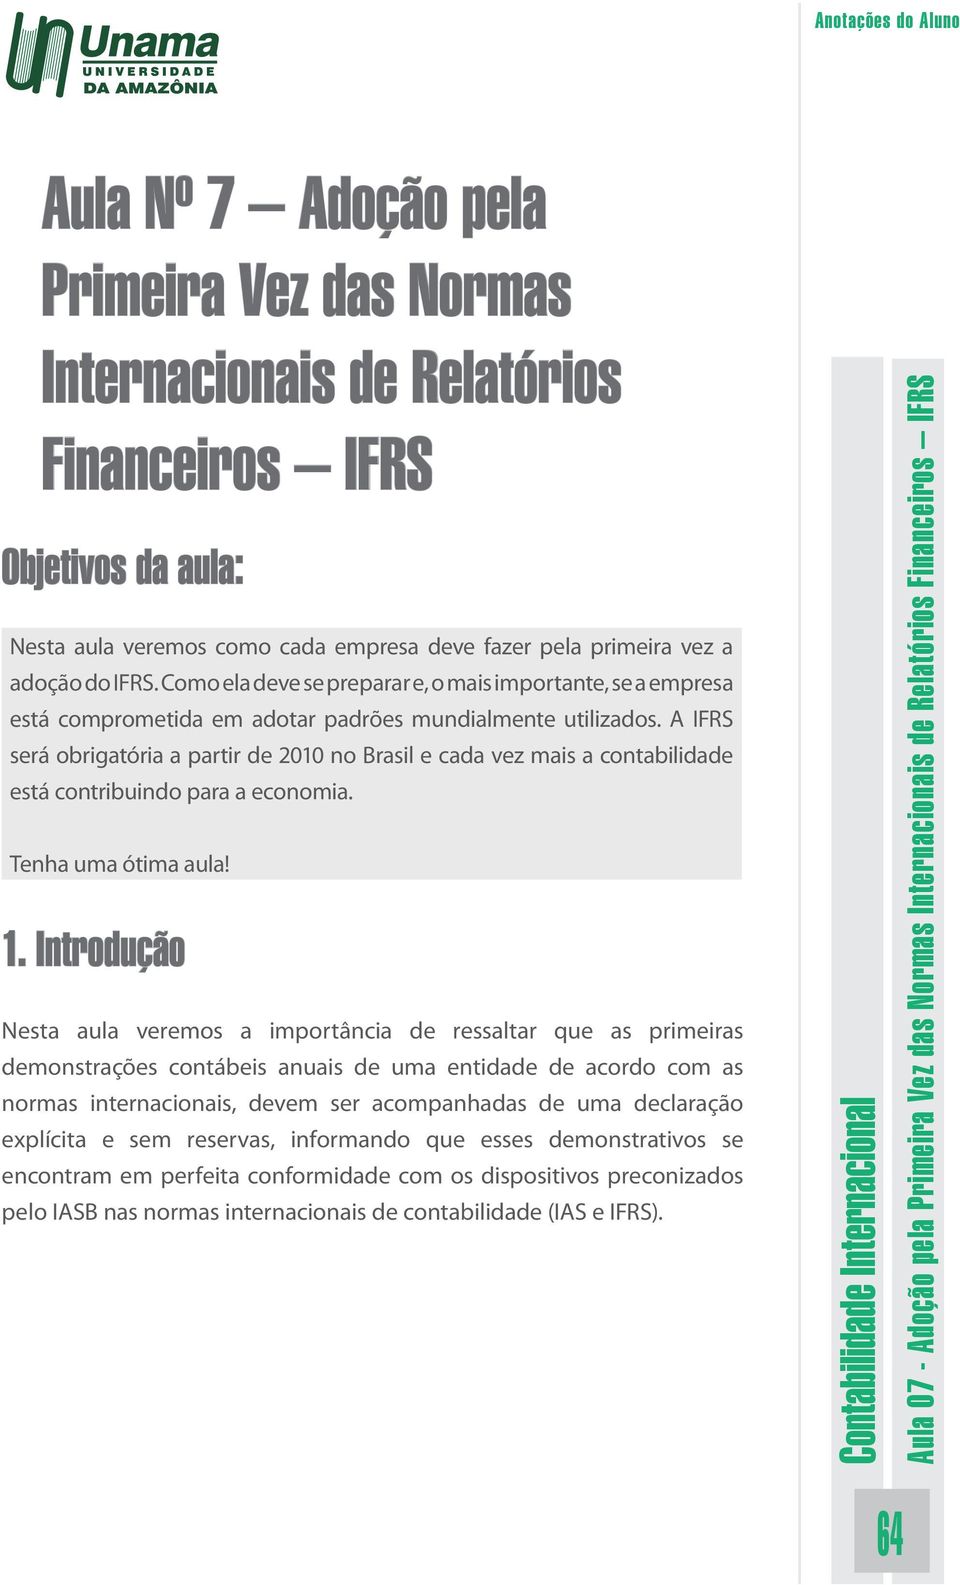 A IFRS será obrigatória a partir de 2010 no Brasil e cada vez mais a contabilidade está contribuindo para a economia. Tenha uma ótima aula! 1.